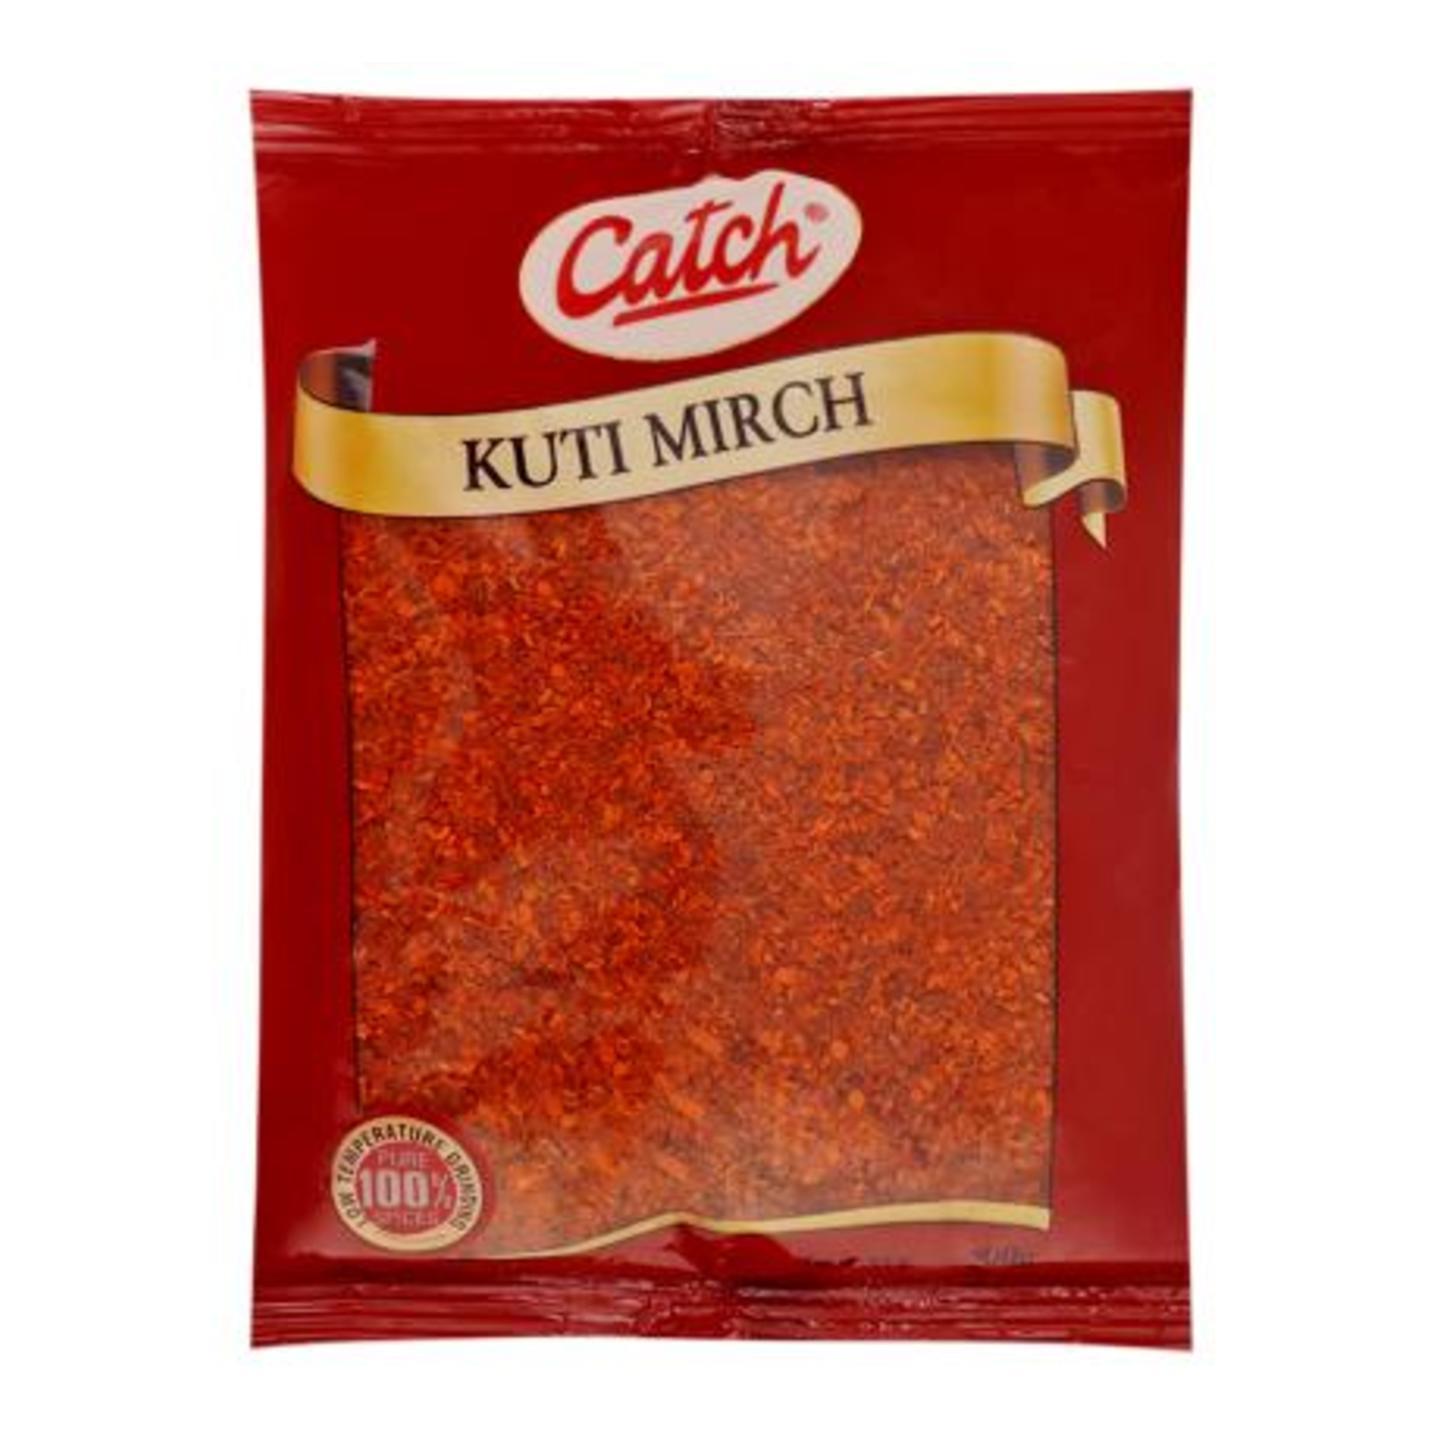 Catch Kuti Mirch Powder 200 g PMBM 0.112